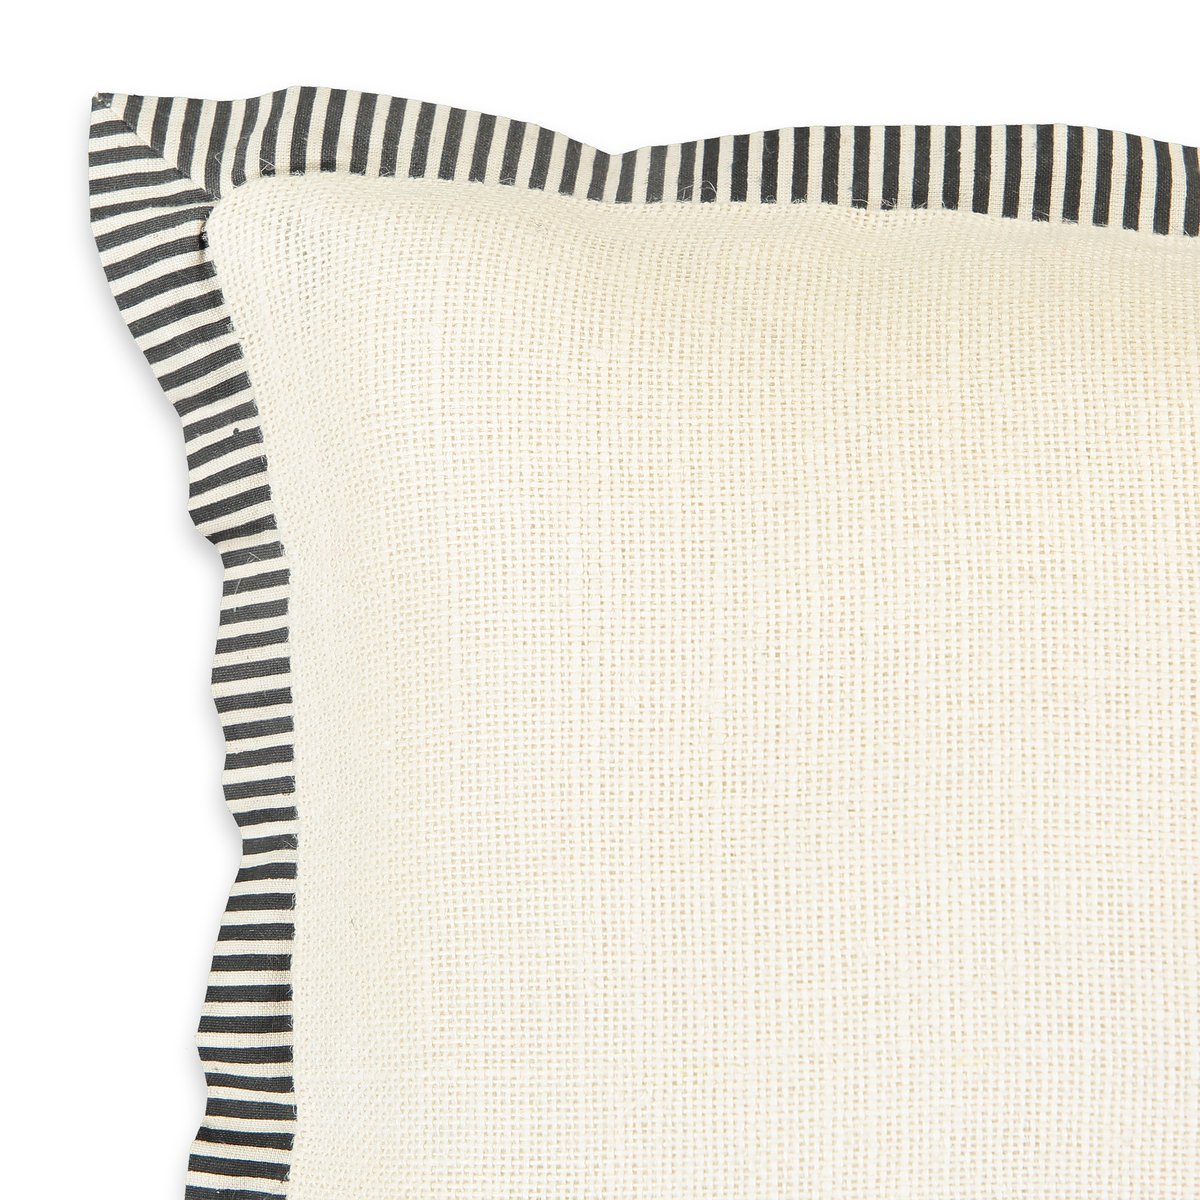 Чехол La Redoute На подушку из джута Nylou 50 x 30 см белый, размер 50 x 30 см - фото 2